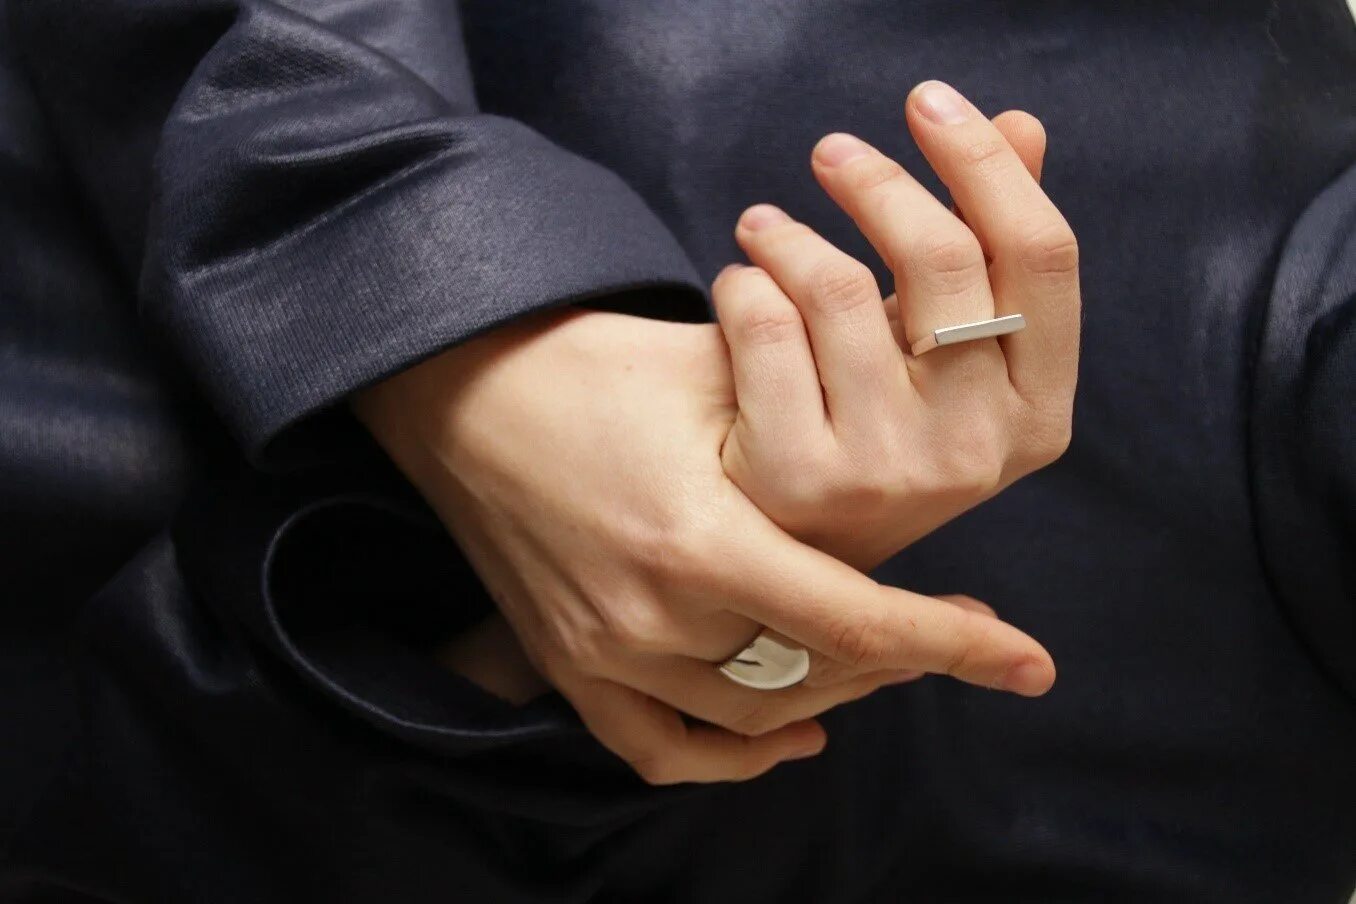 Кольцо на среднем пальце. Обручальное кольцо на пальце. Мужские обручальные кольца на руке. Мужское обручальное кольцо на пальце.